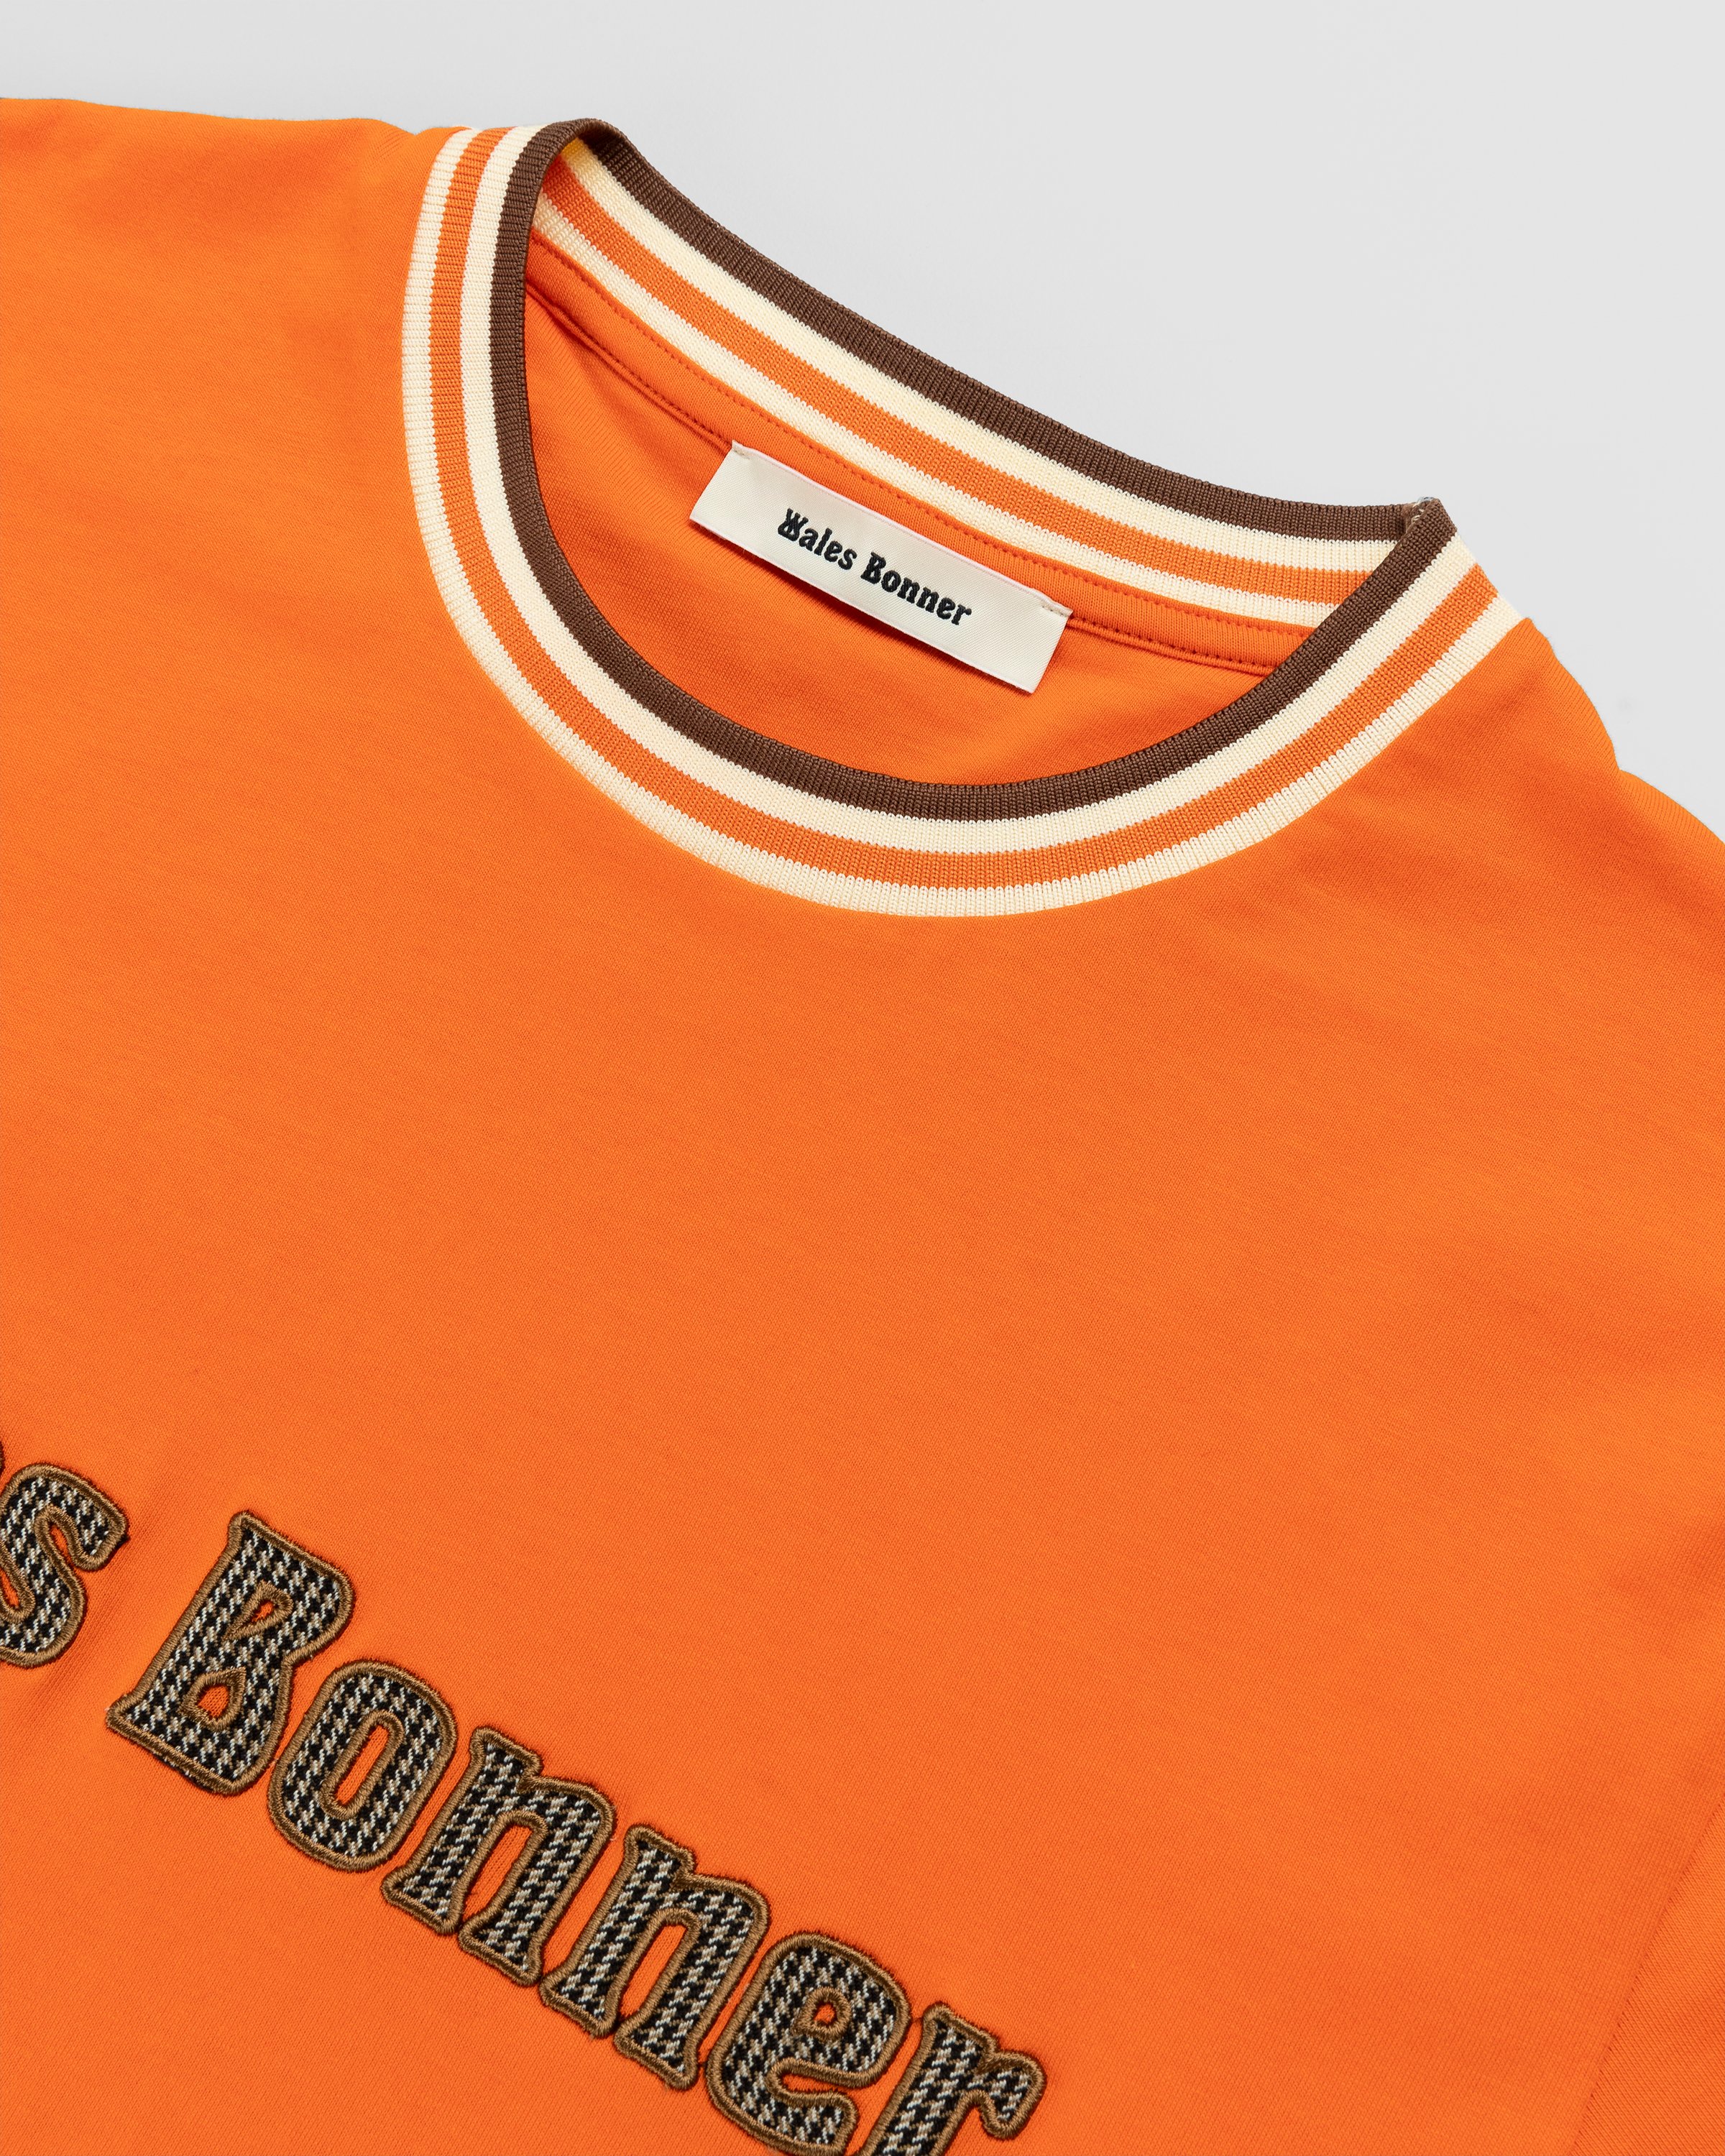 Wales Bonner - Original T-Shirt Orange - Clothing - Orange - Image 4